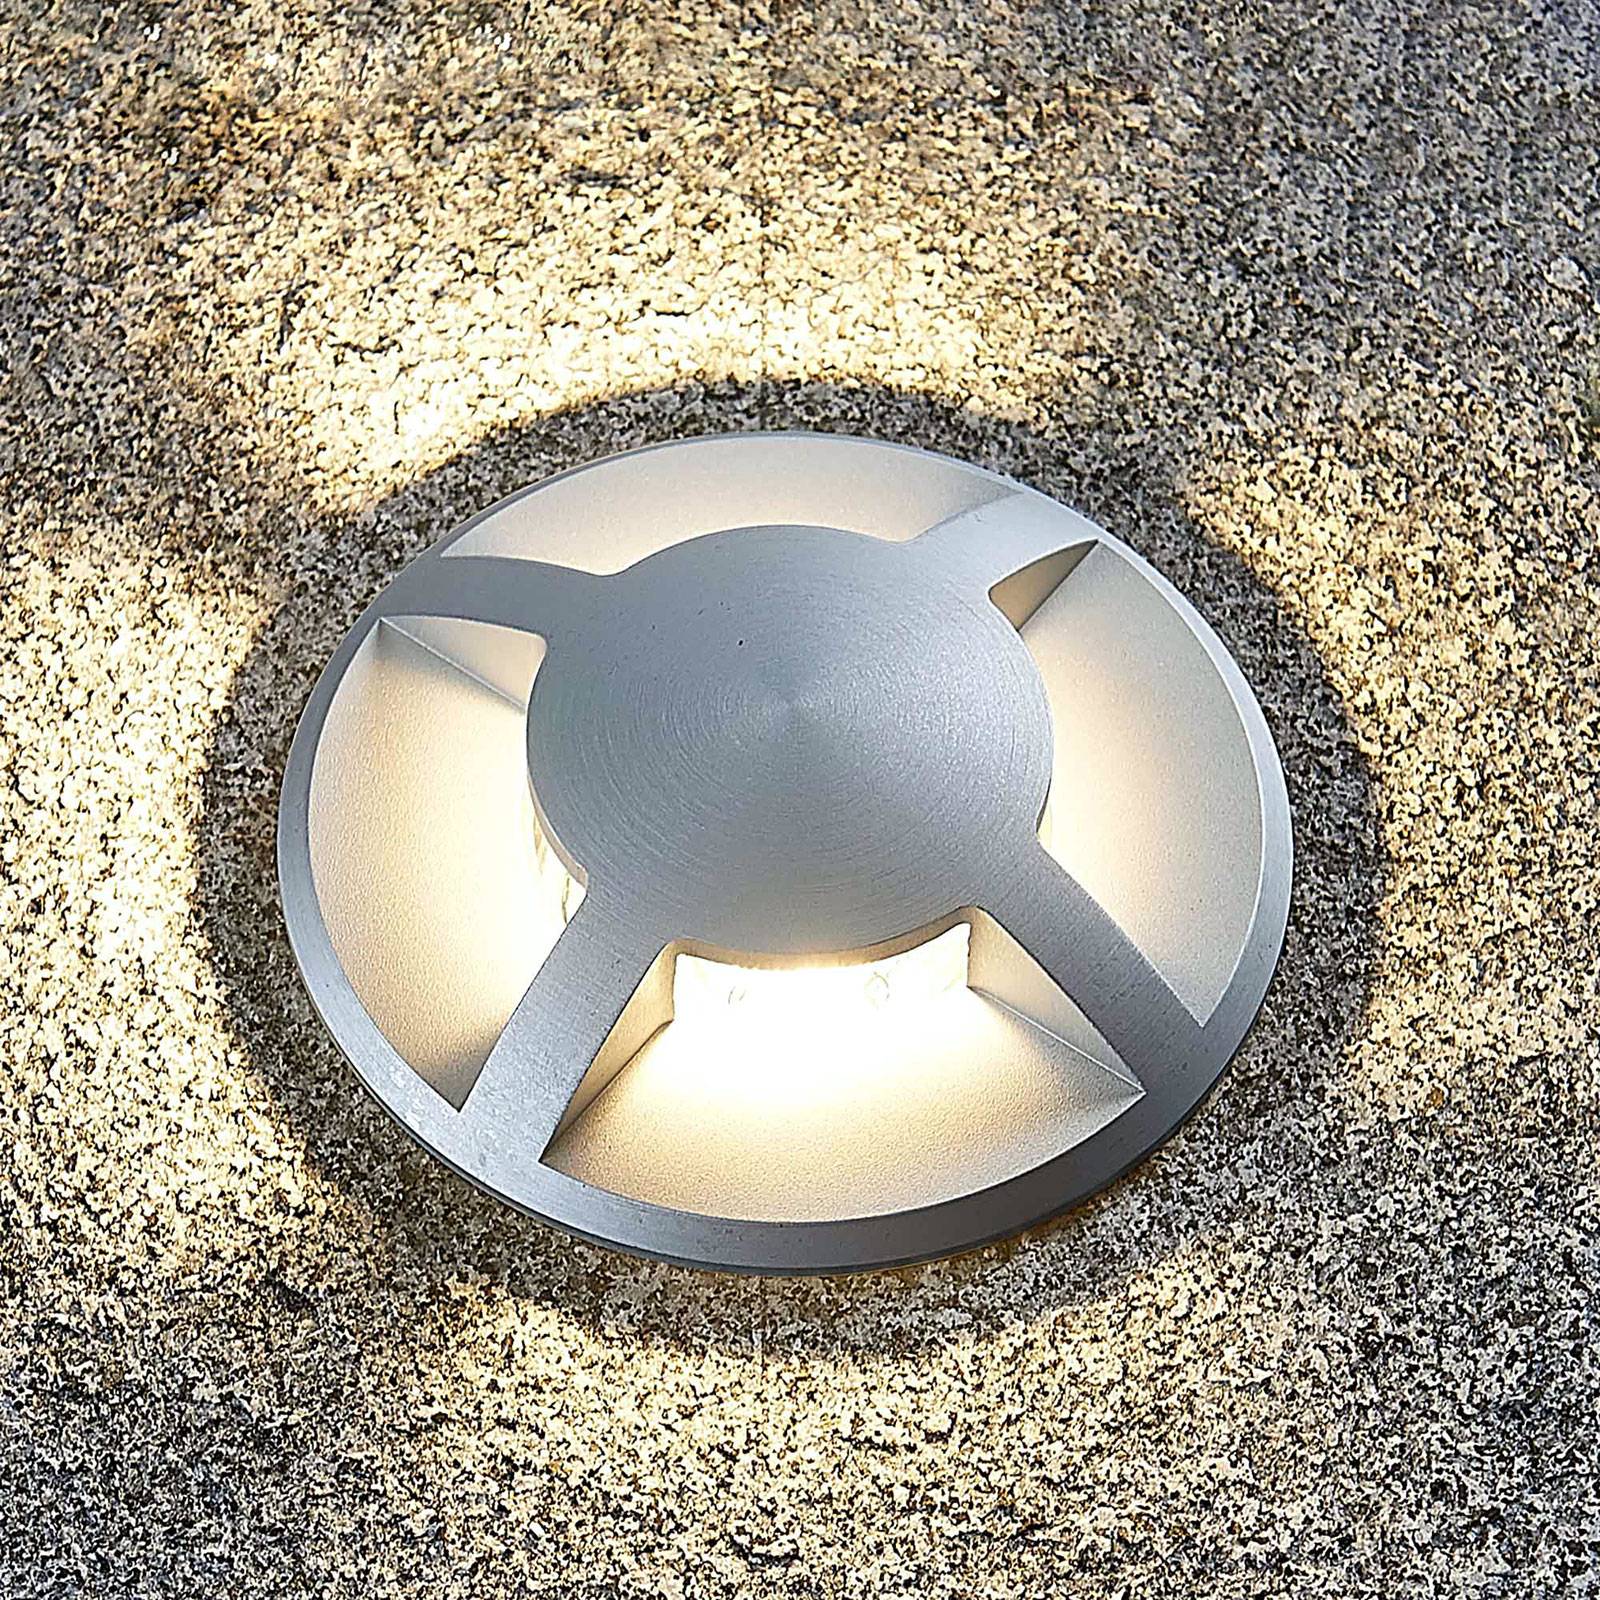 Luminaire d’extérieur pour le jardin 1 lampe,à A+ en Gris en Aluminium LED Spot encastrable dans le sol Kenan la terrasse de Lucande le balcon & la maison Moderne 